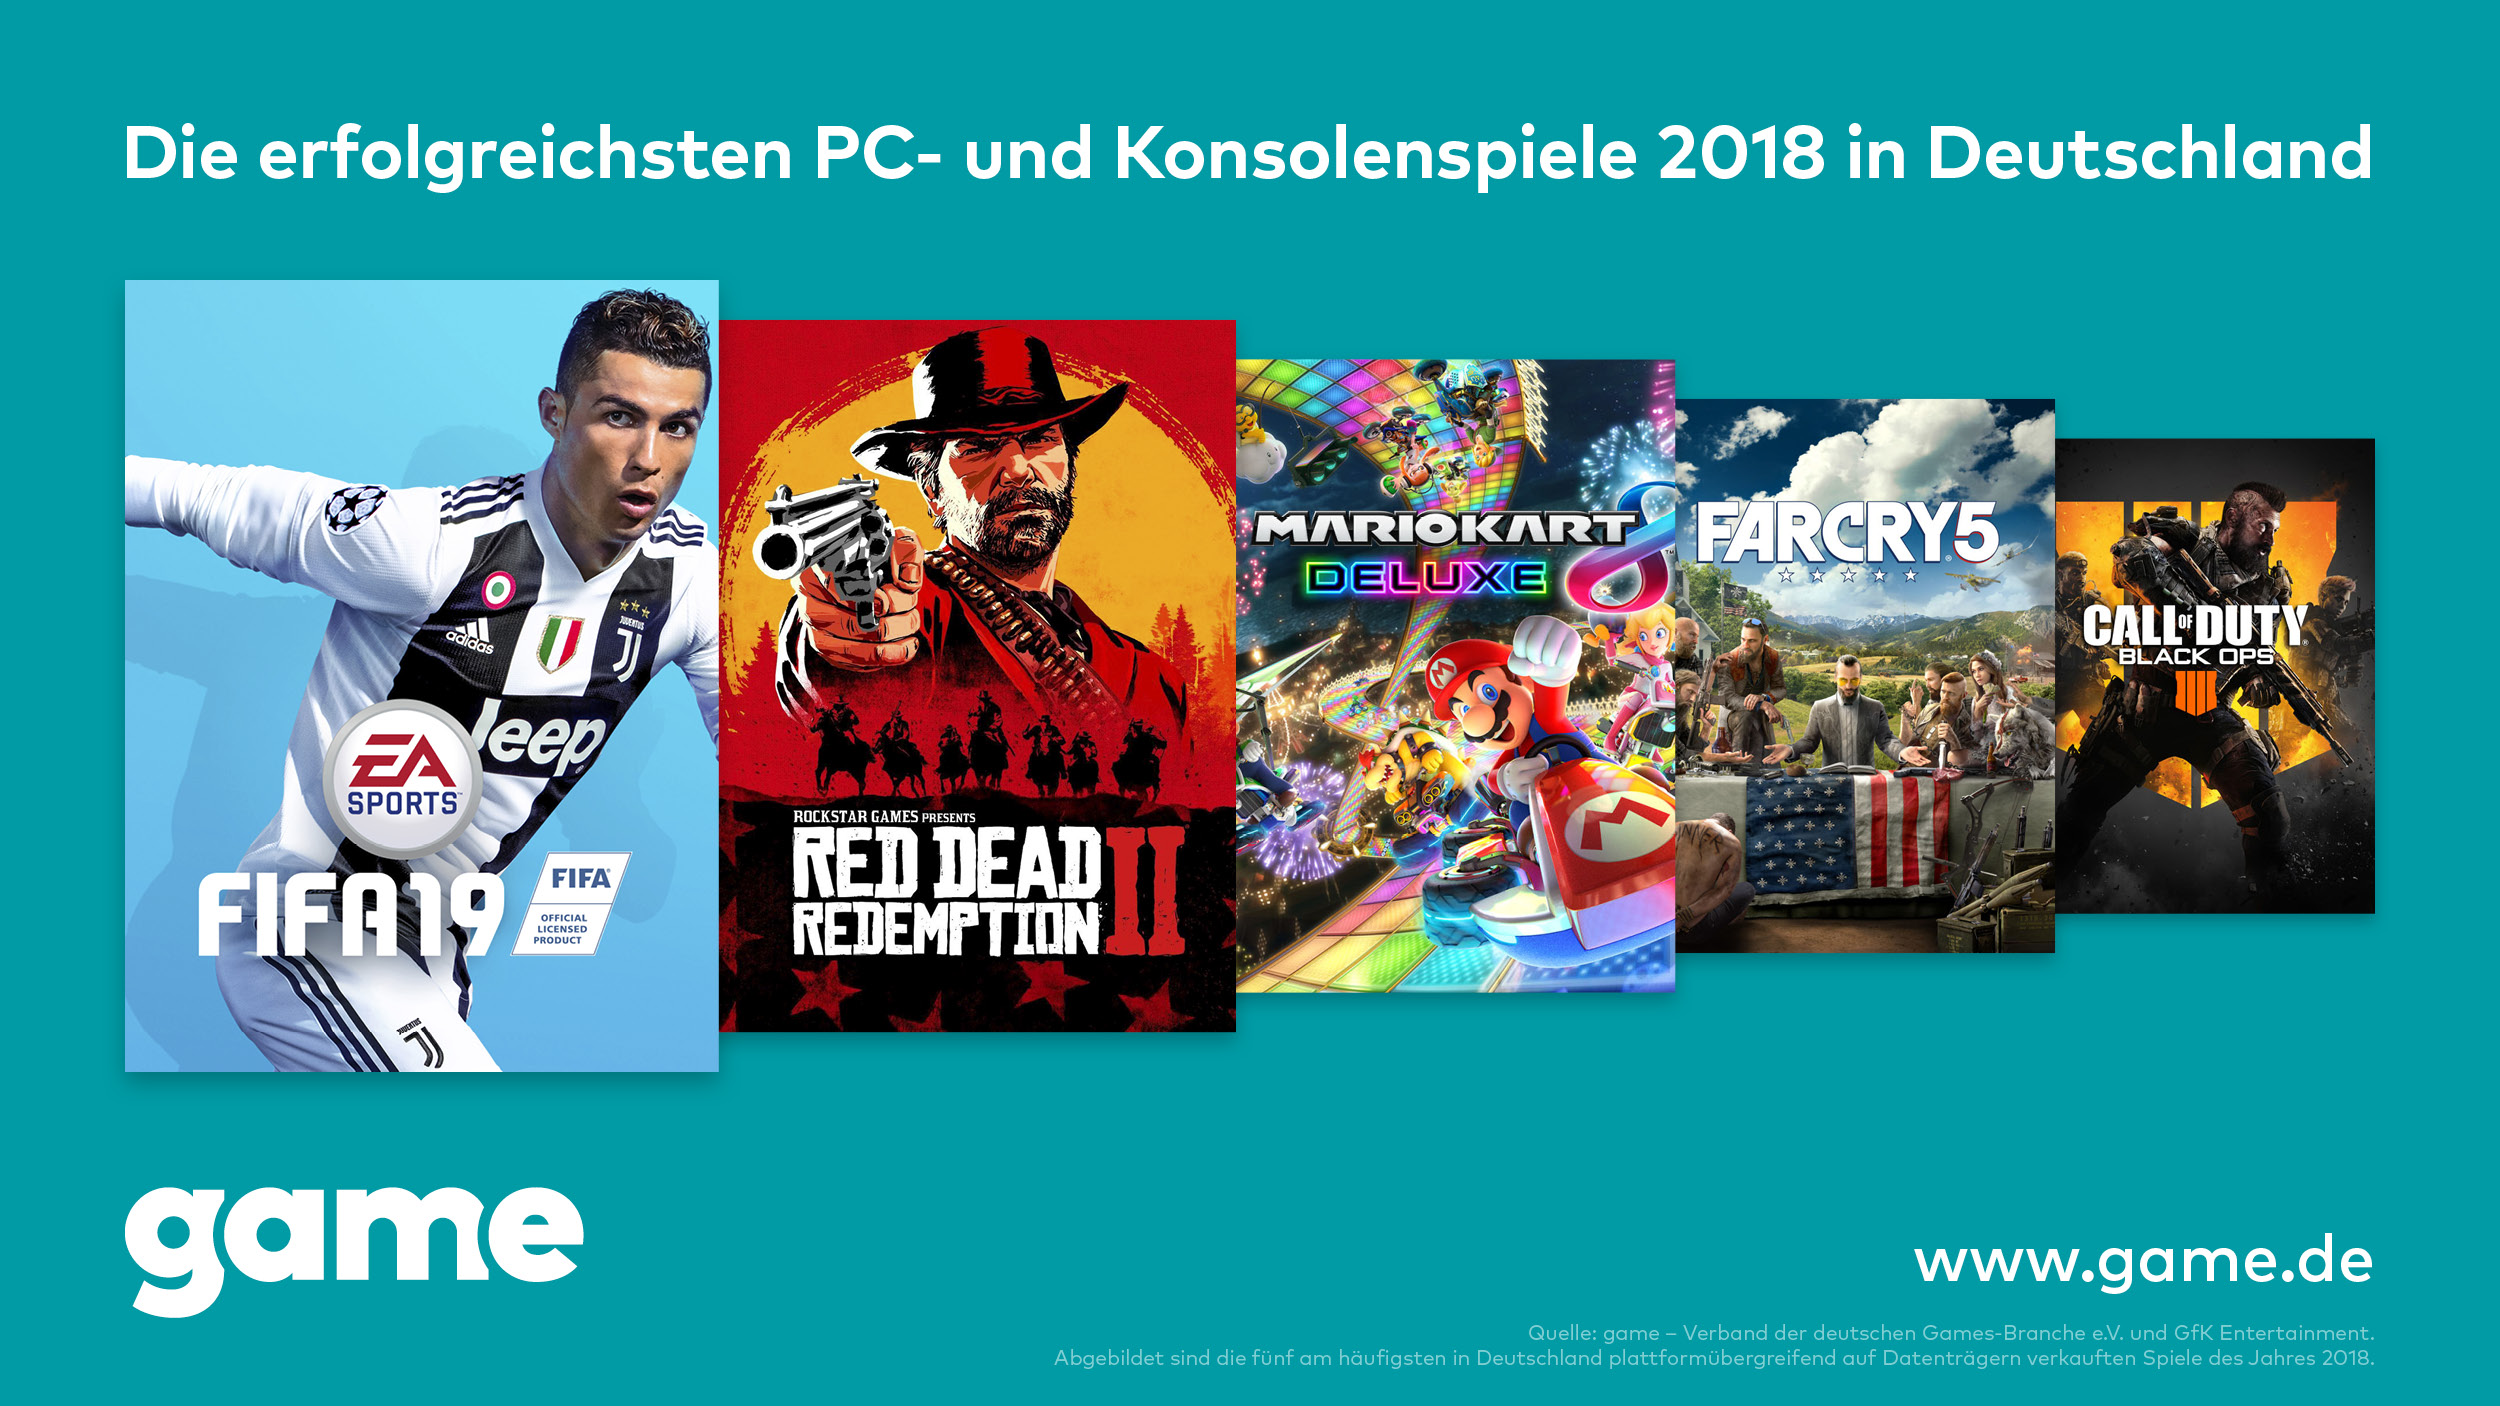 FIFA 19, Red Dead Redemption 2 und Mario Kart 8 Deluxe waren 2018 die erfolgreichsten PC- und Konsolenspiele